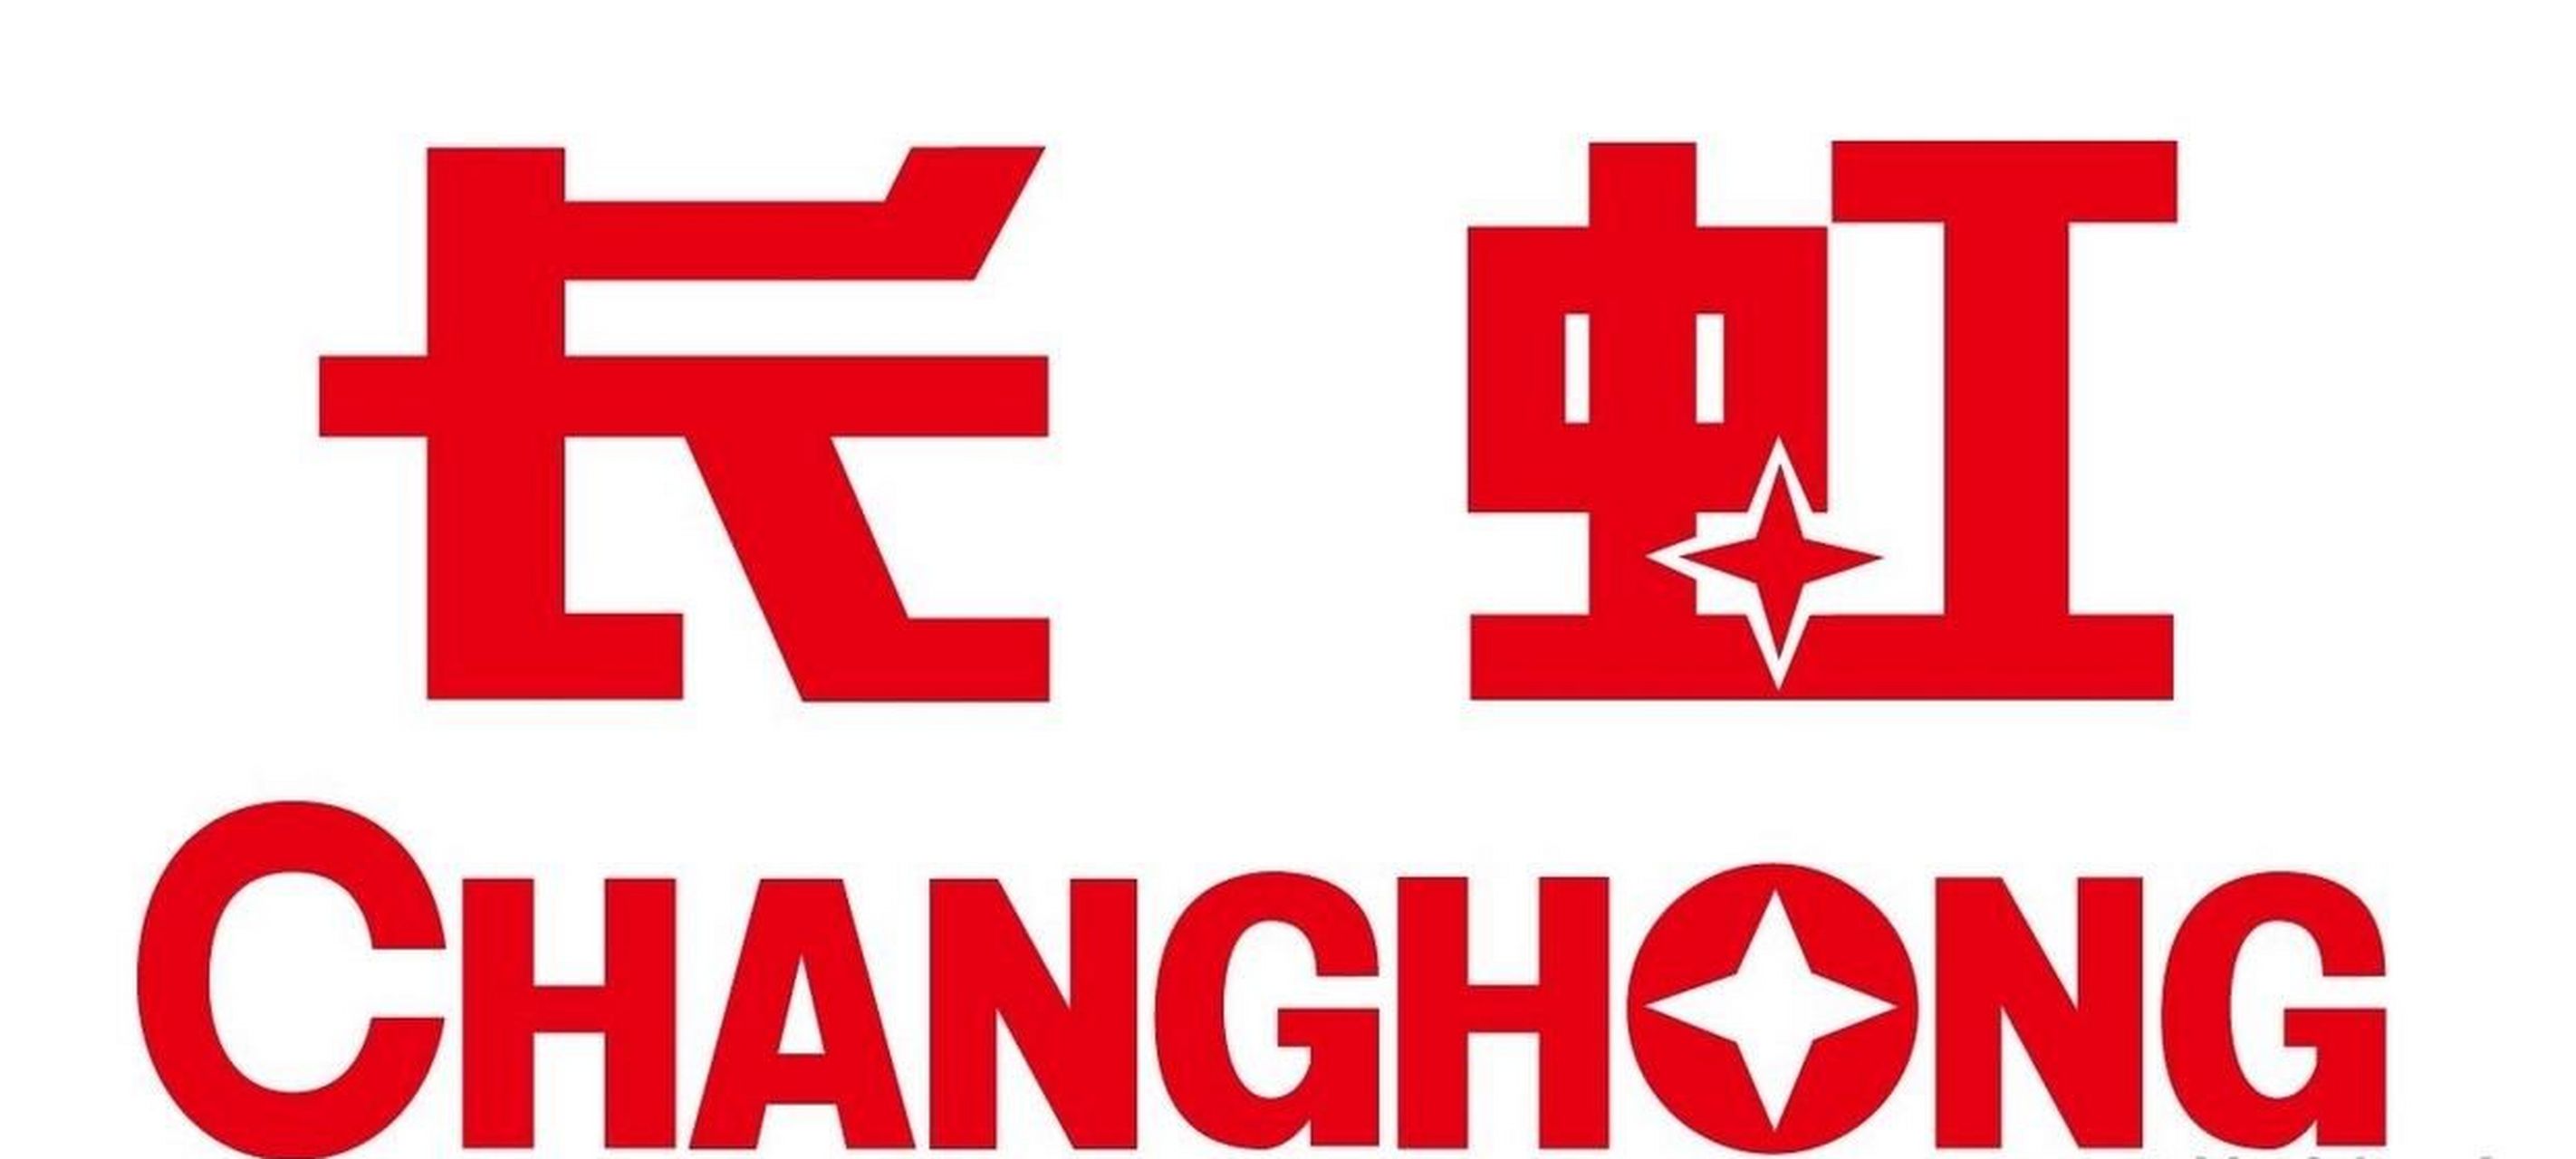 四川长虹logo图片